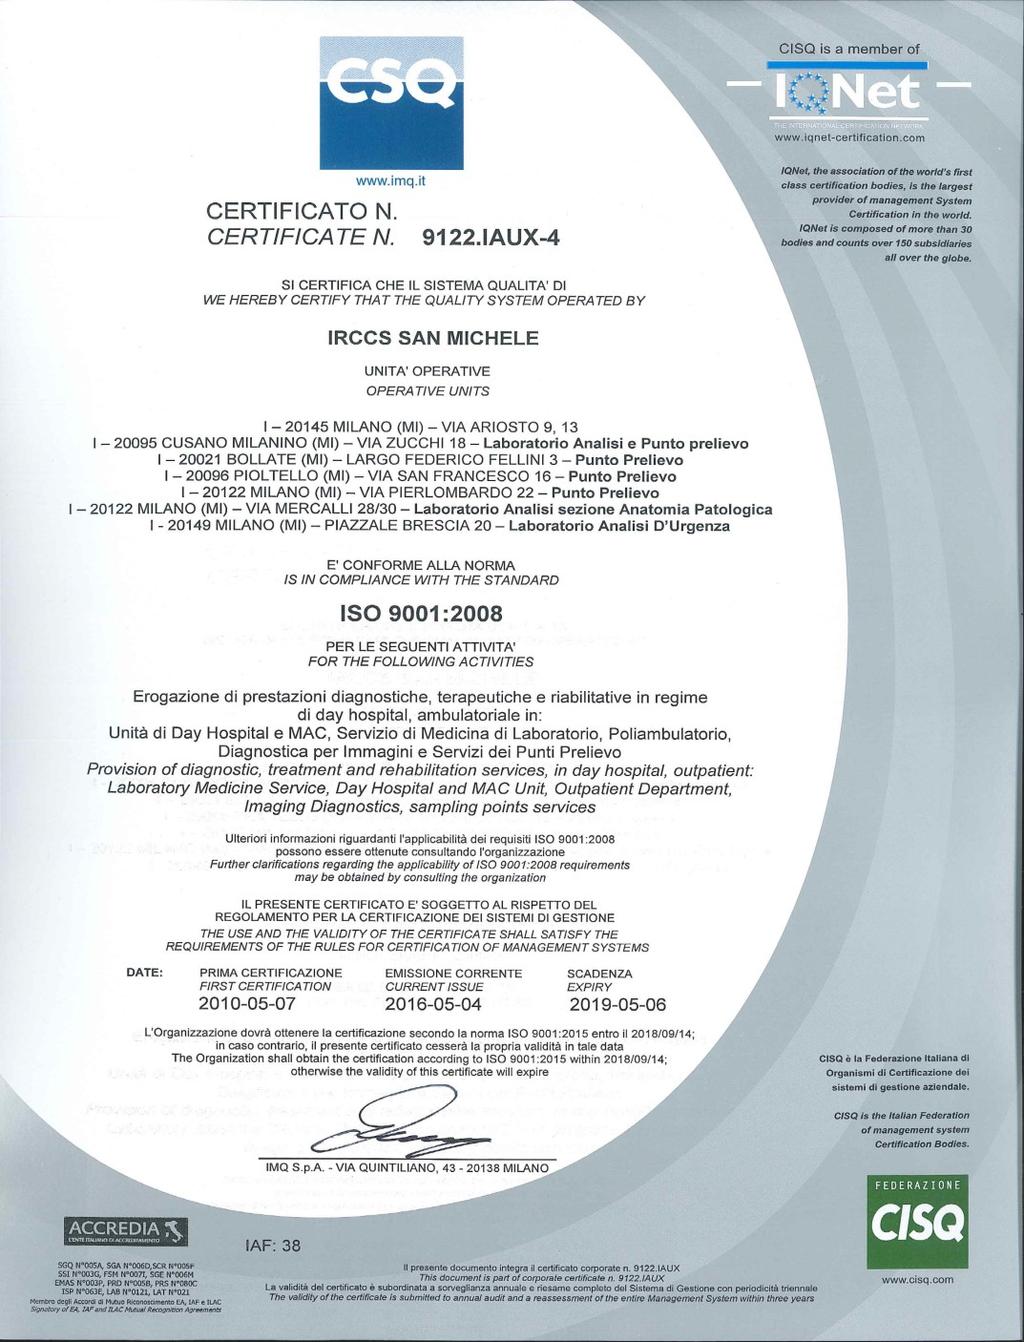 requisiti della norma UNI EN ISO 9001:2008.